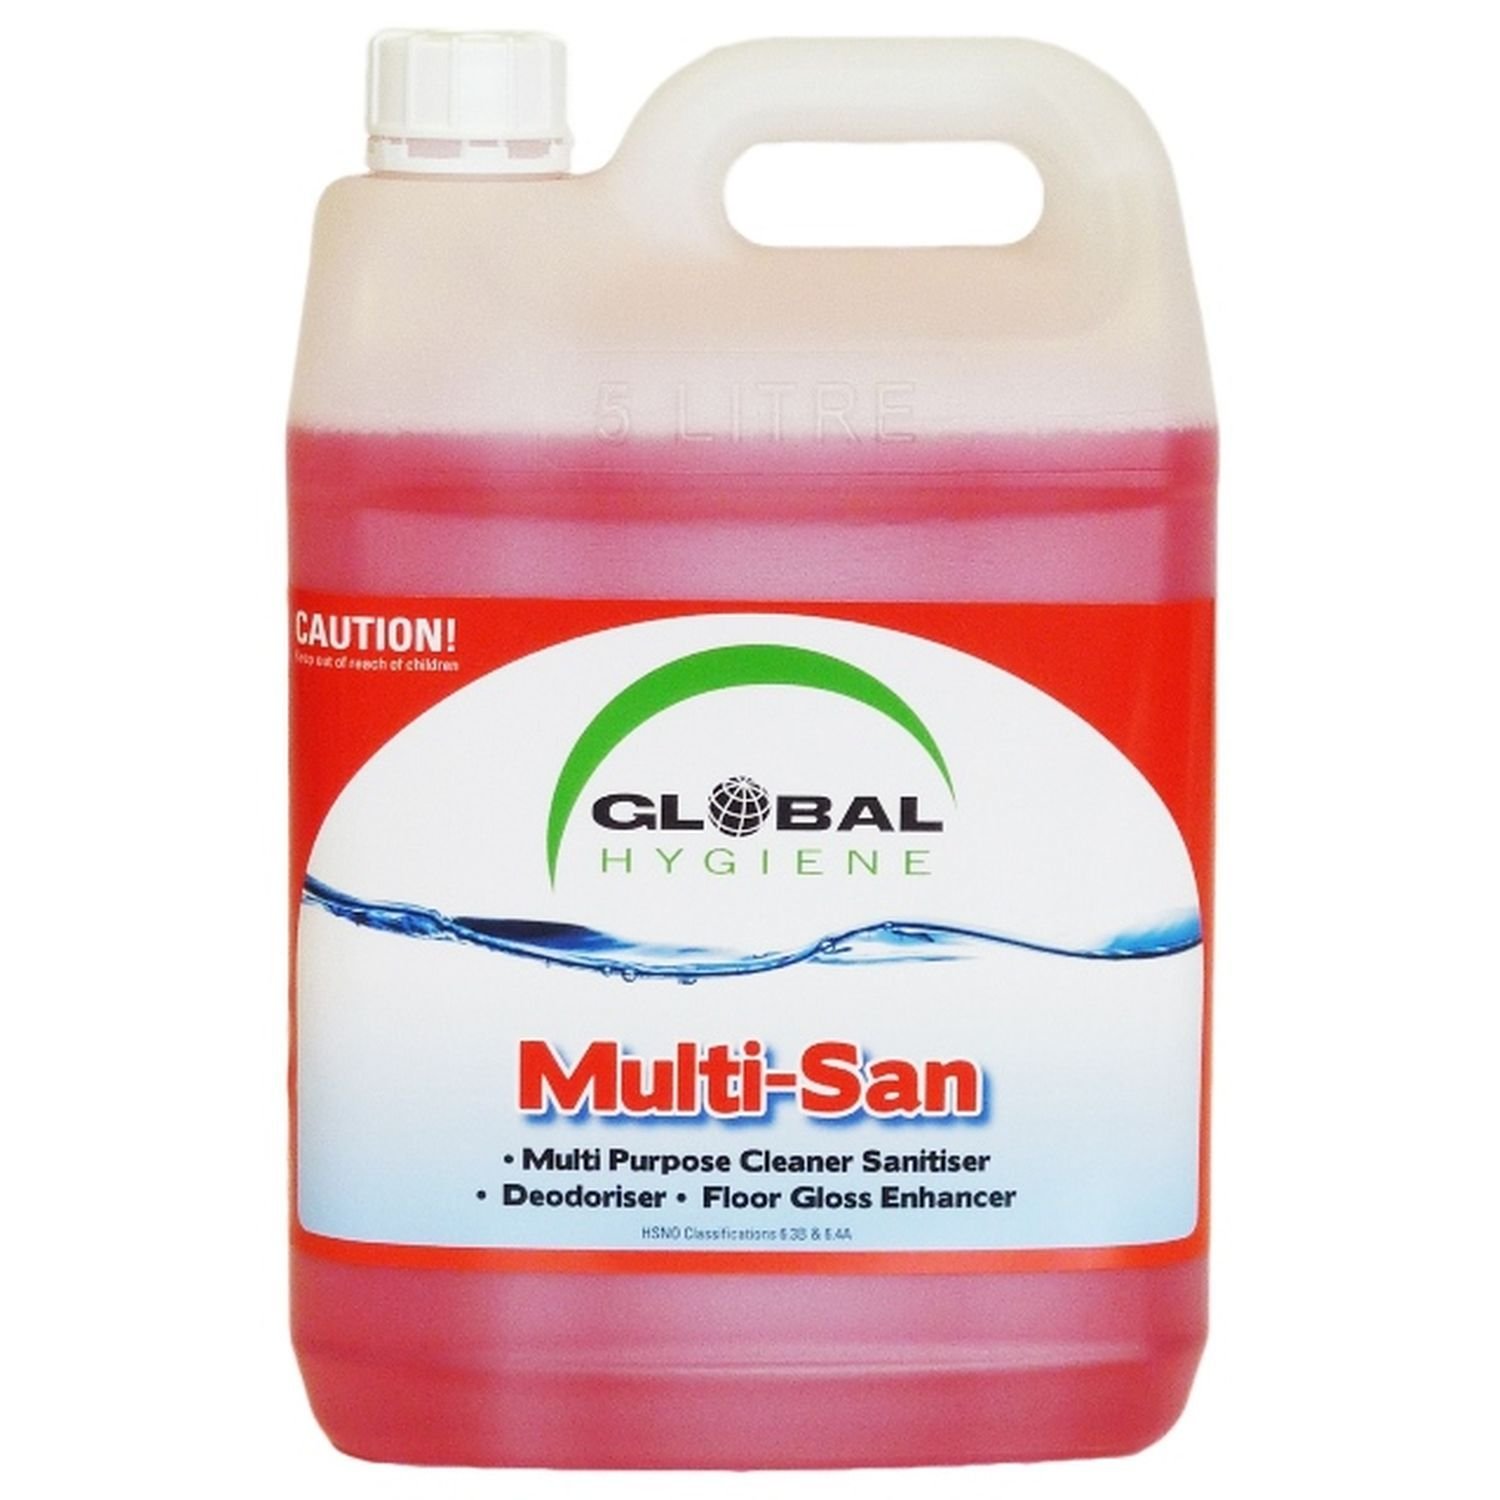 Global MultiSan Cleaner Sanitiser